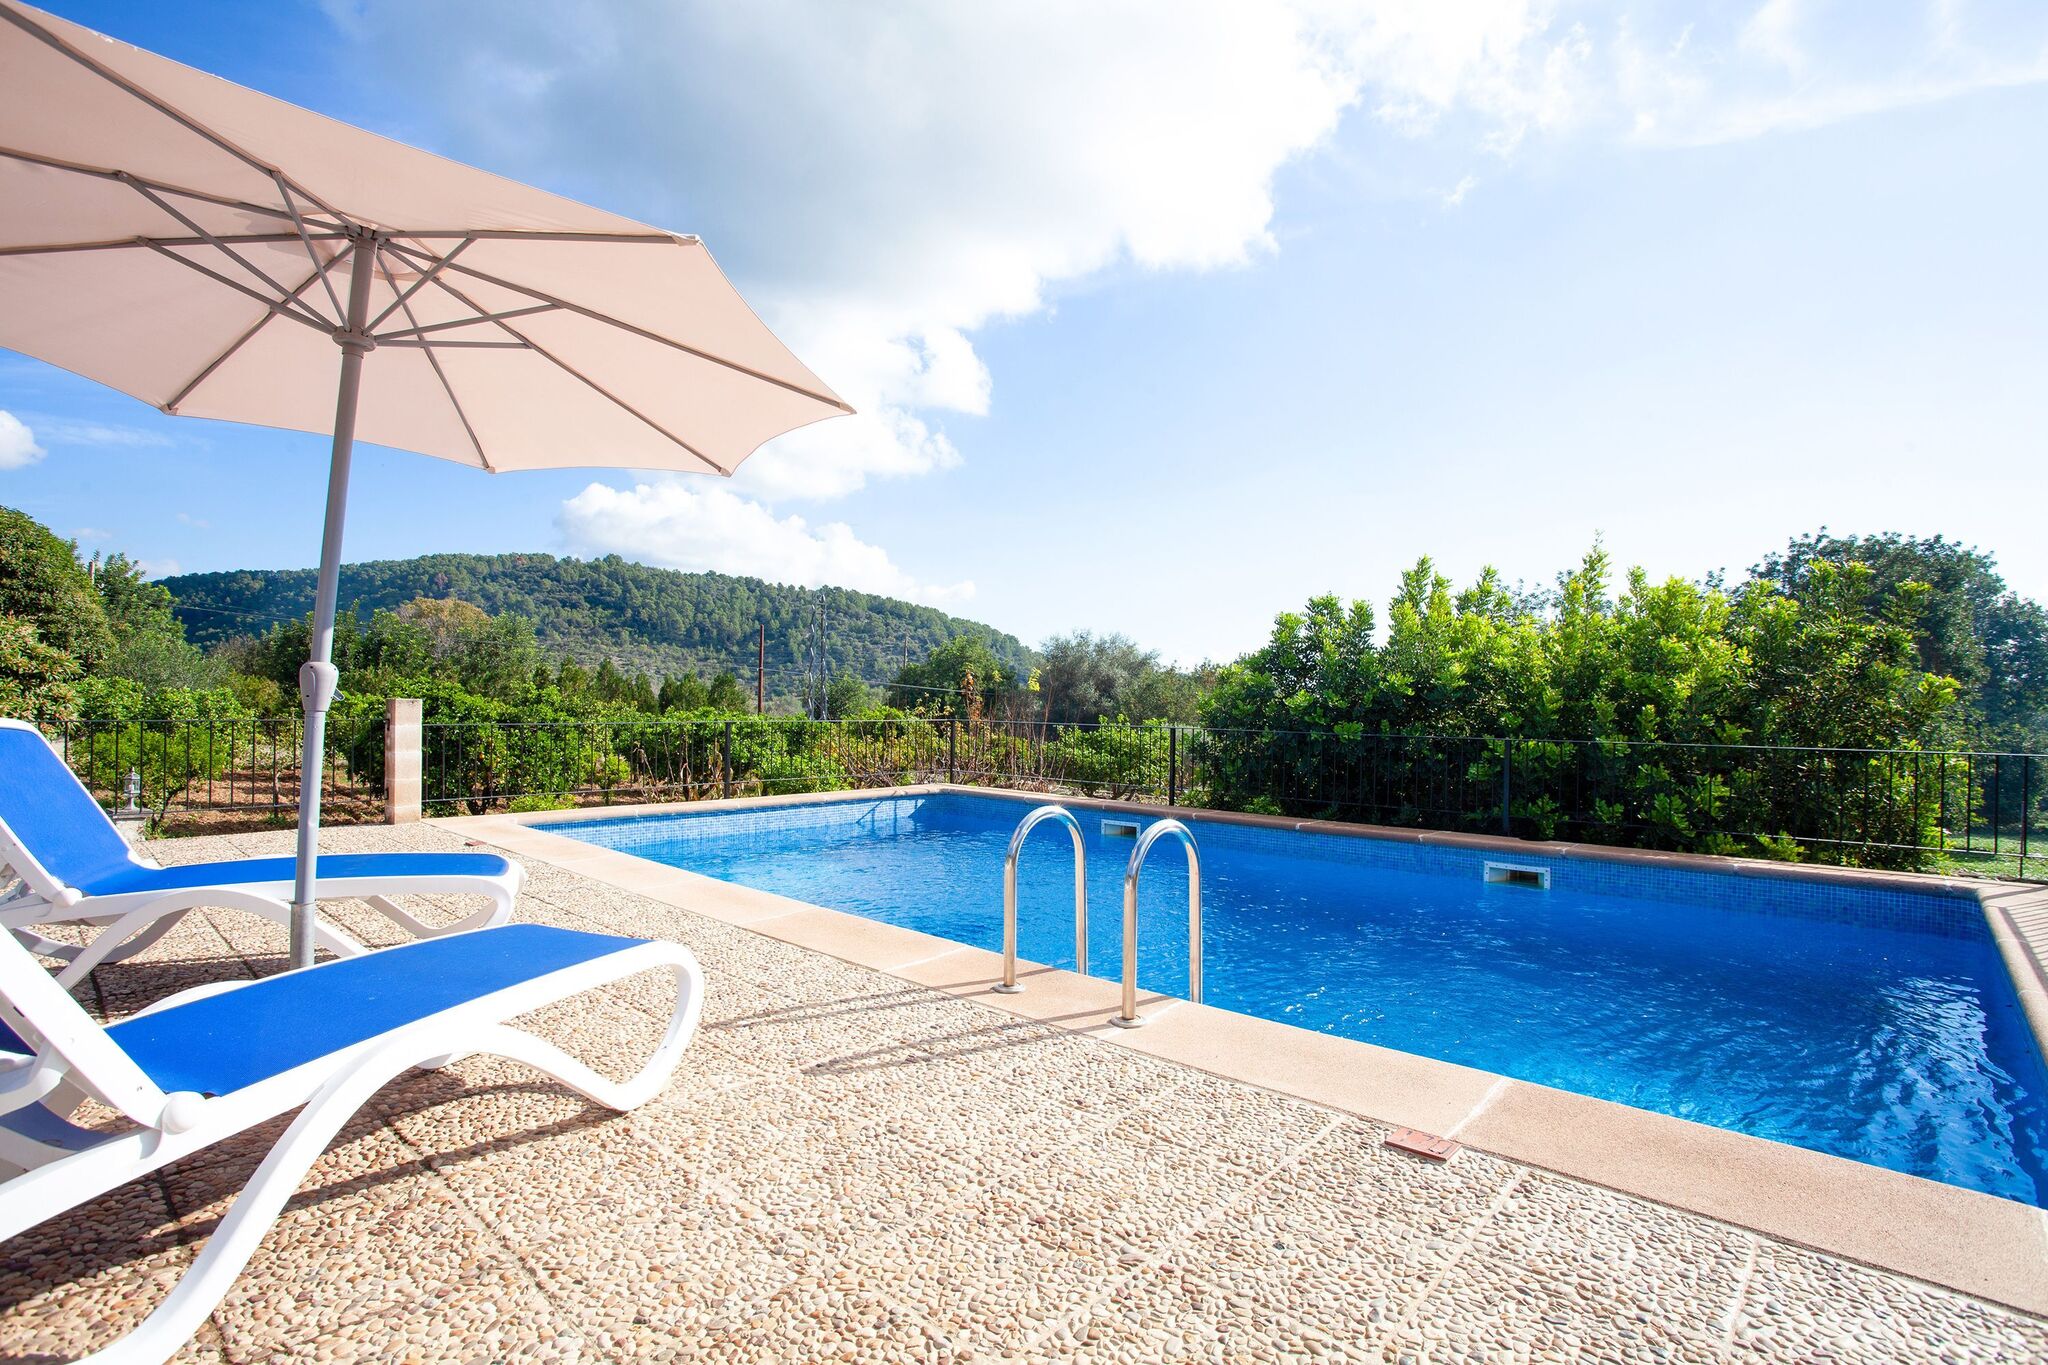 Vakantiehuis met privézwembad in de uitlopers van de Campanet-vallei